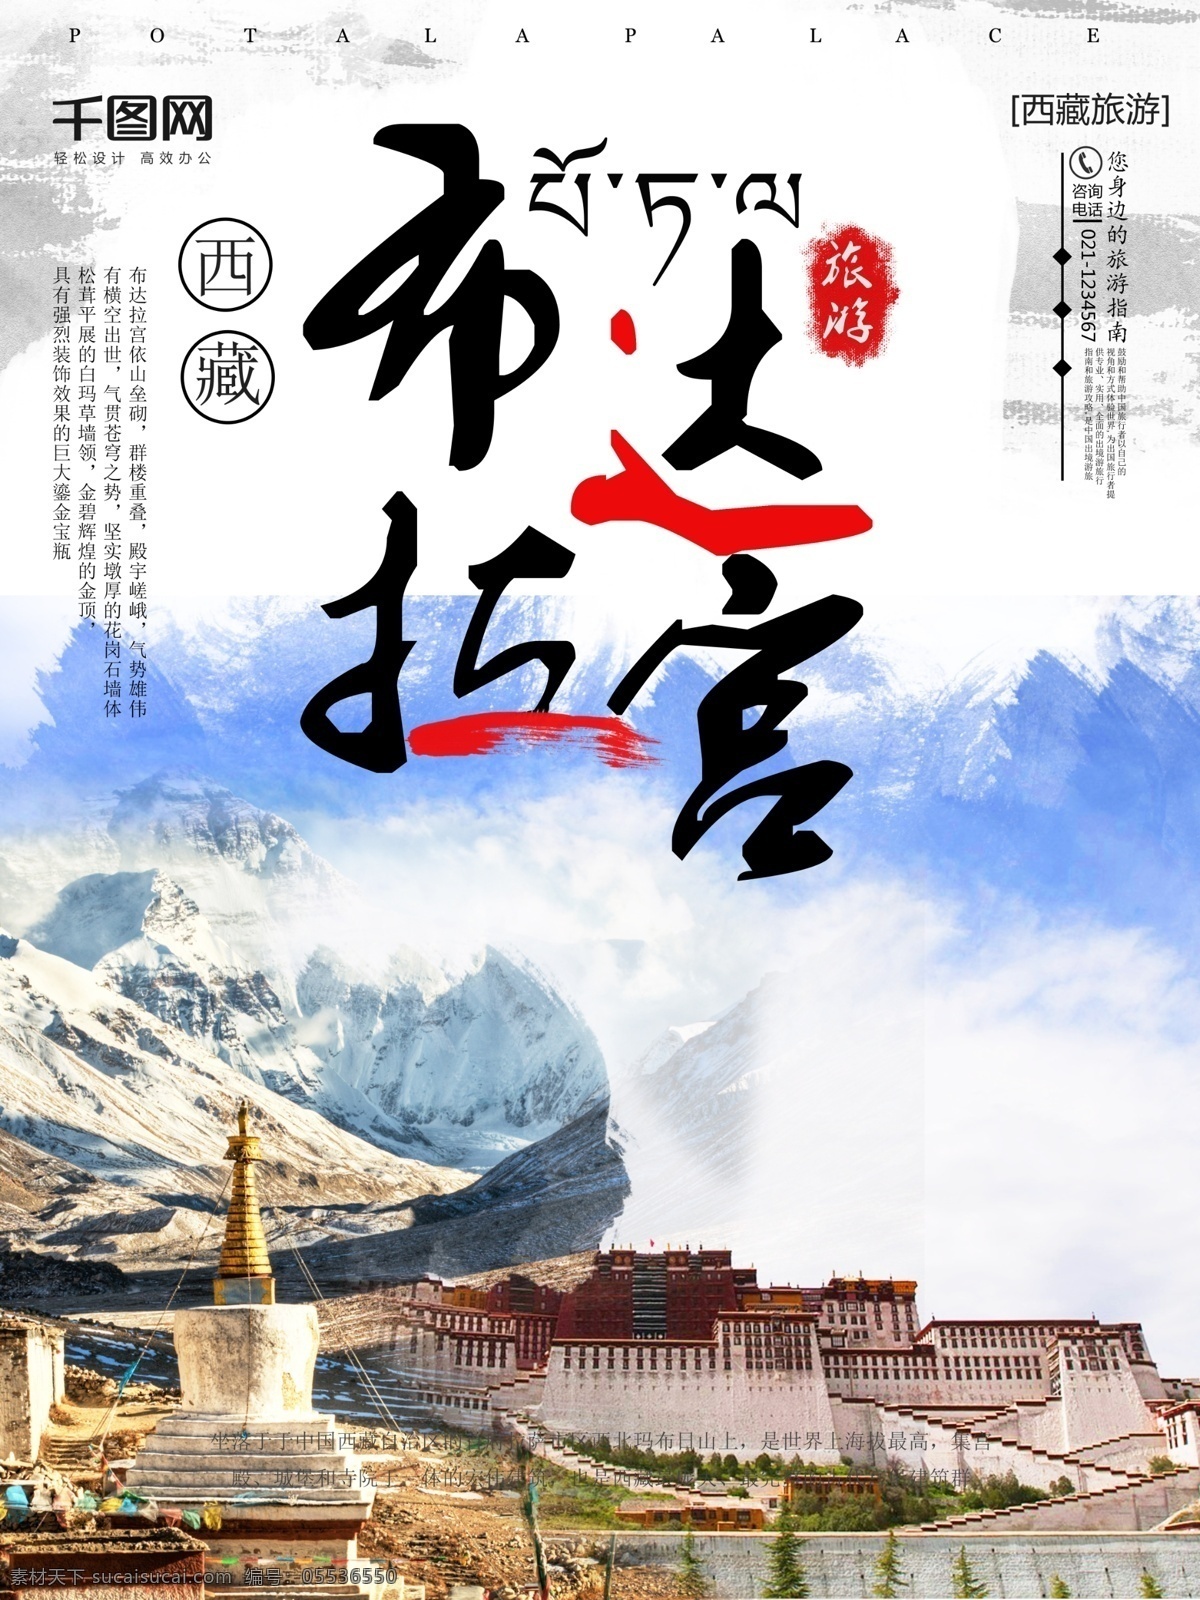 西藏 布达拉宫 旅游 海报 旅游海报 景点宣传海报 旅游景点 西藏旅游 布达拉宫旅游 西藏景点 国庆旅游 旅游促销海报